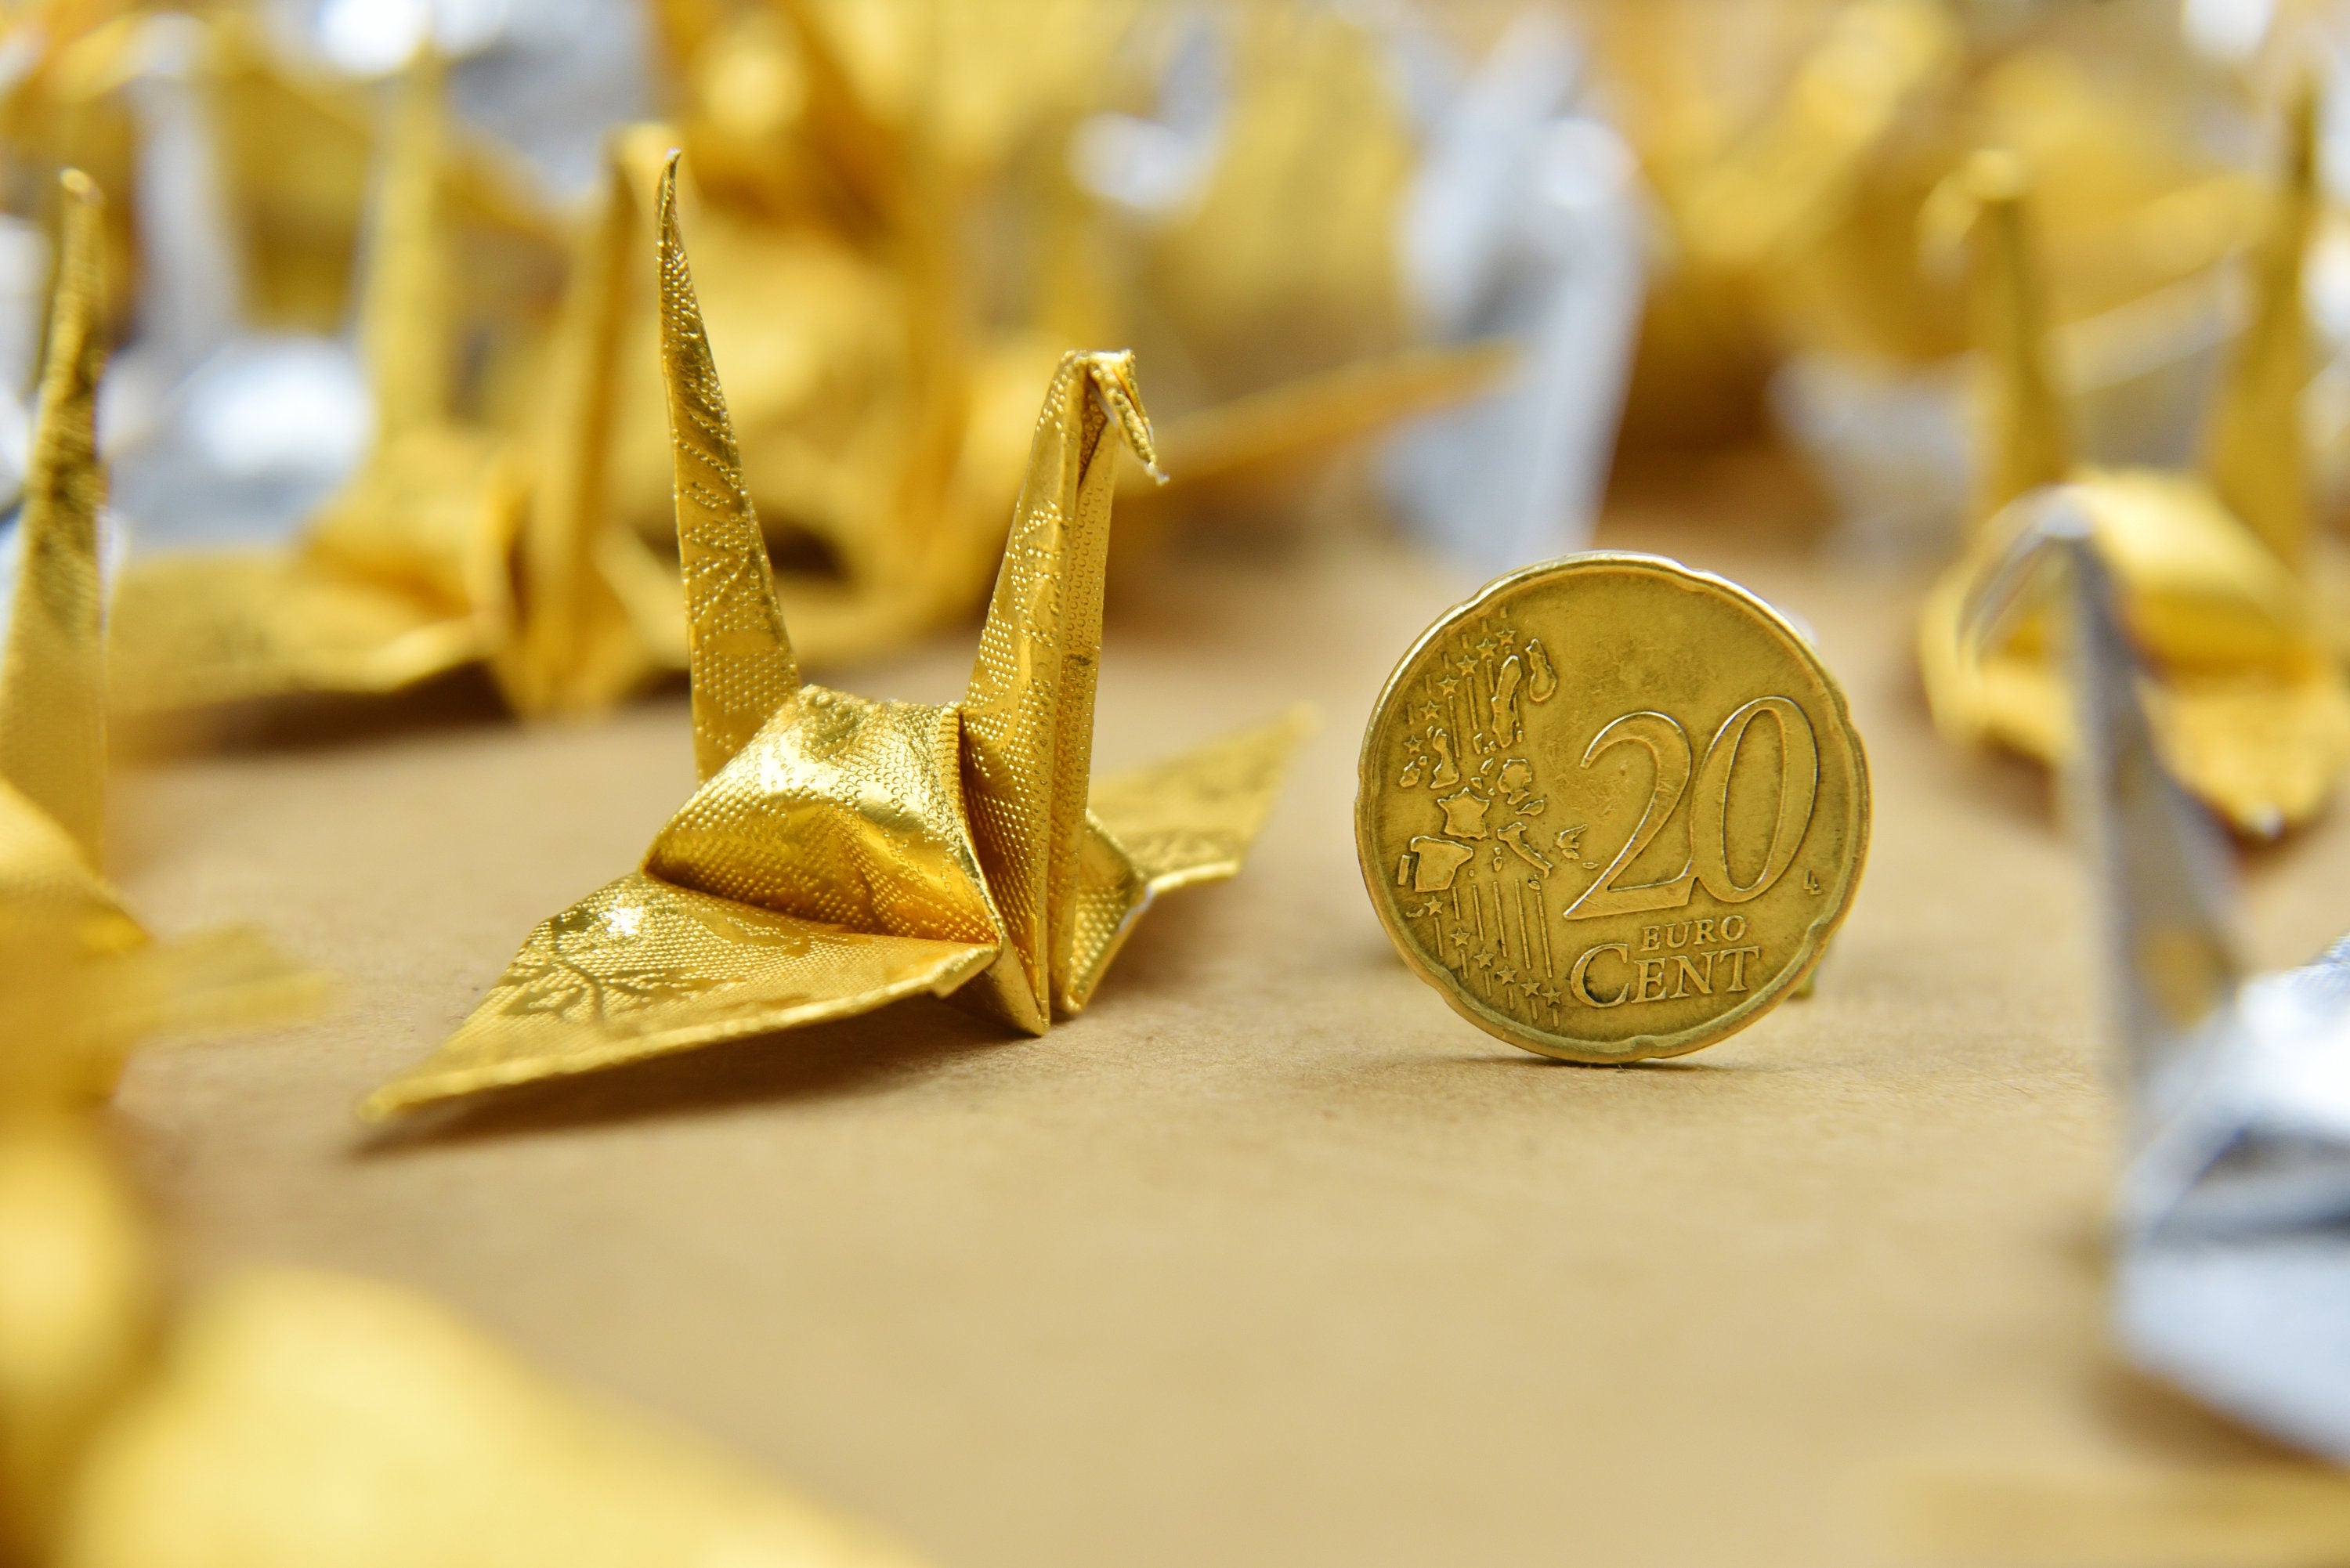 100 gru di carta origami - oro argento con motivo a rose - piccola 1,5 pollici - per ornamento, regalo di nozze, decorazione